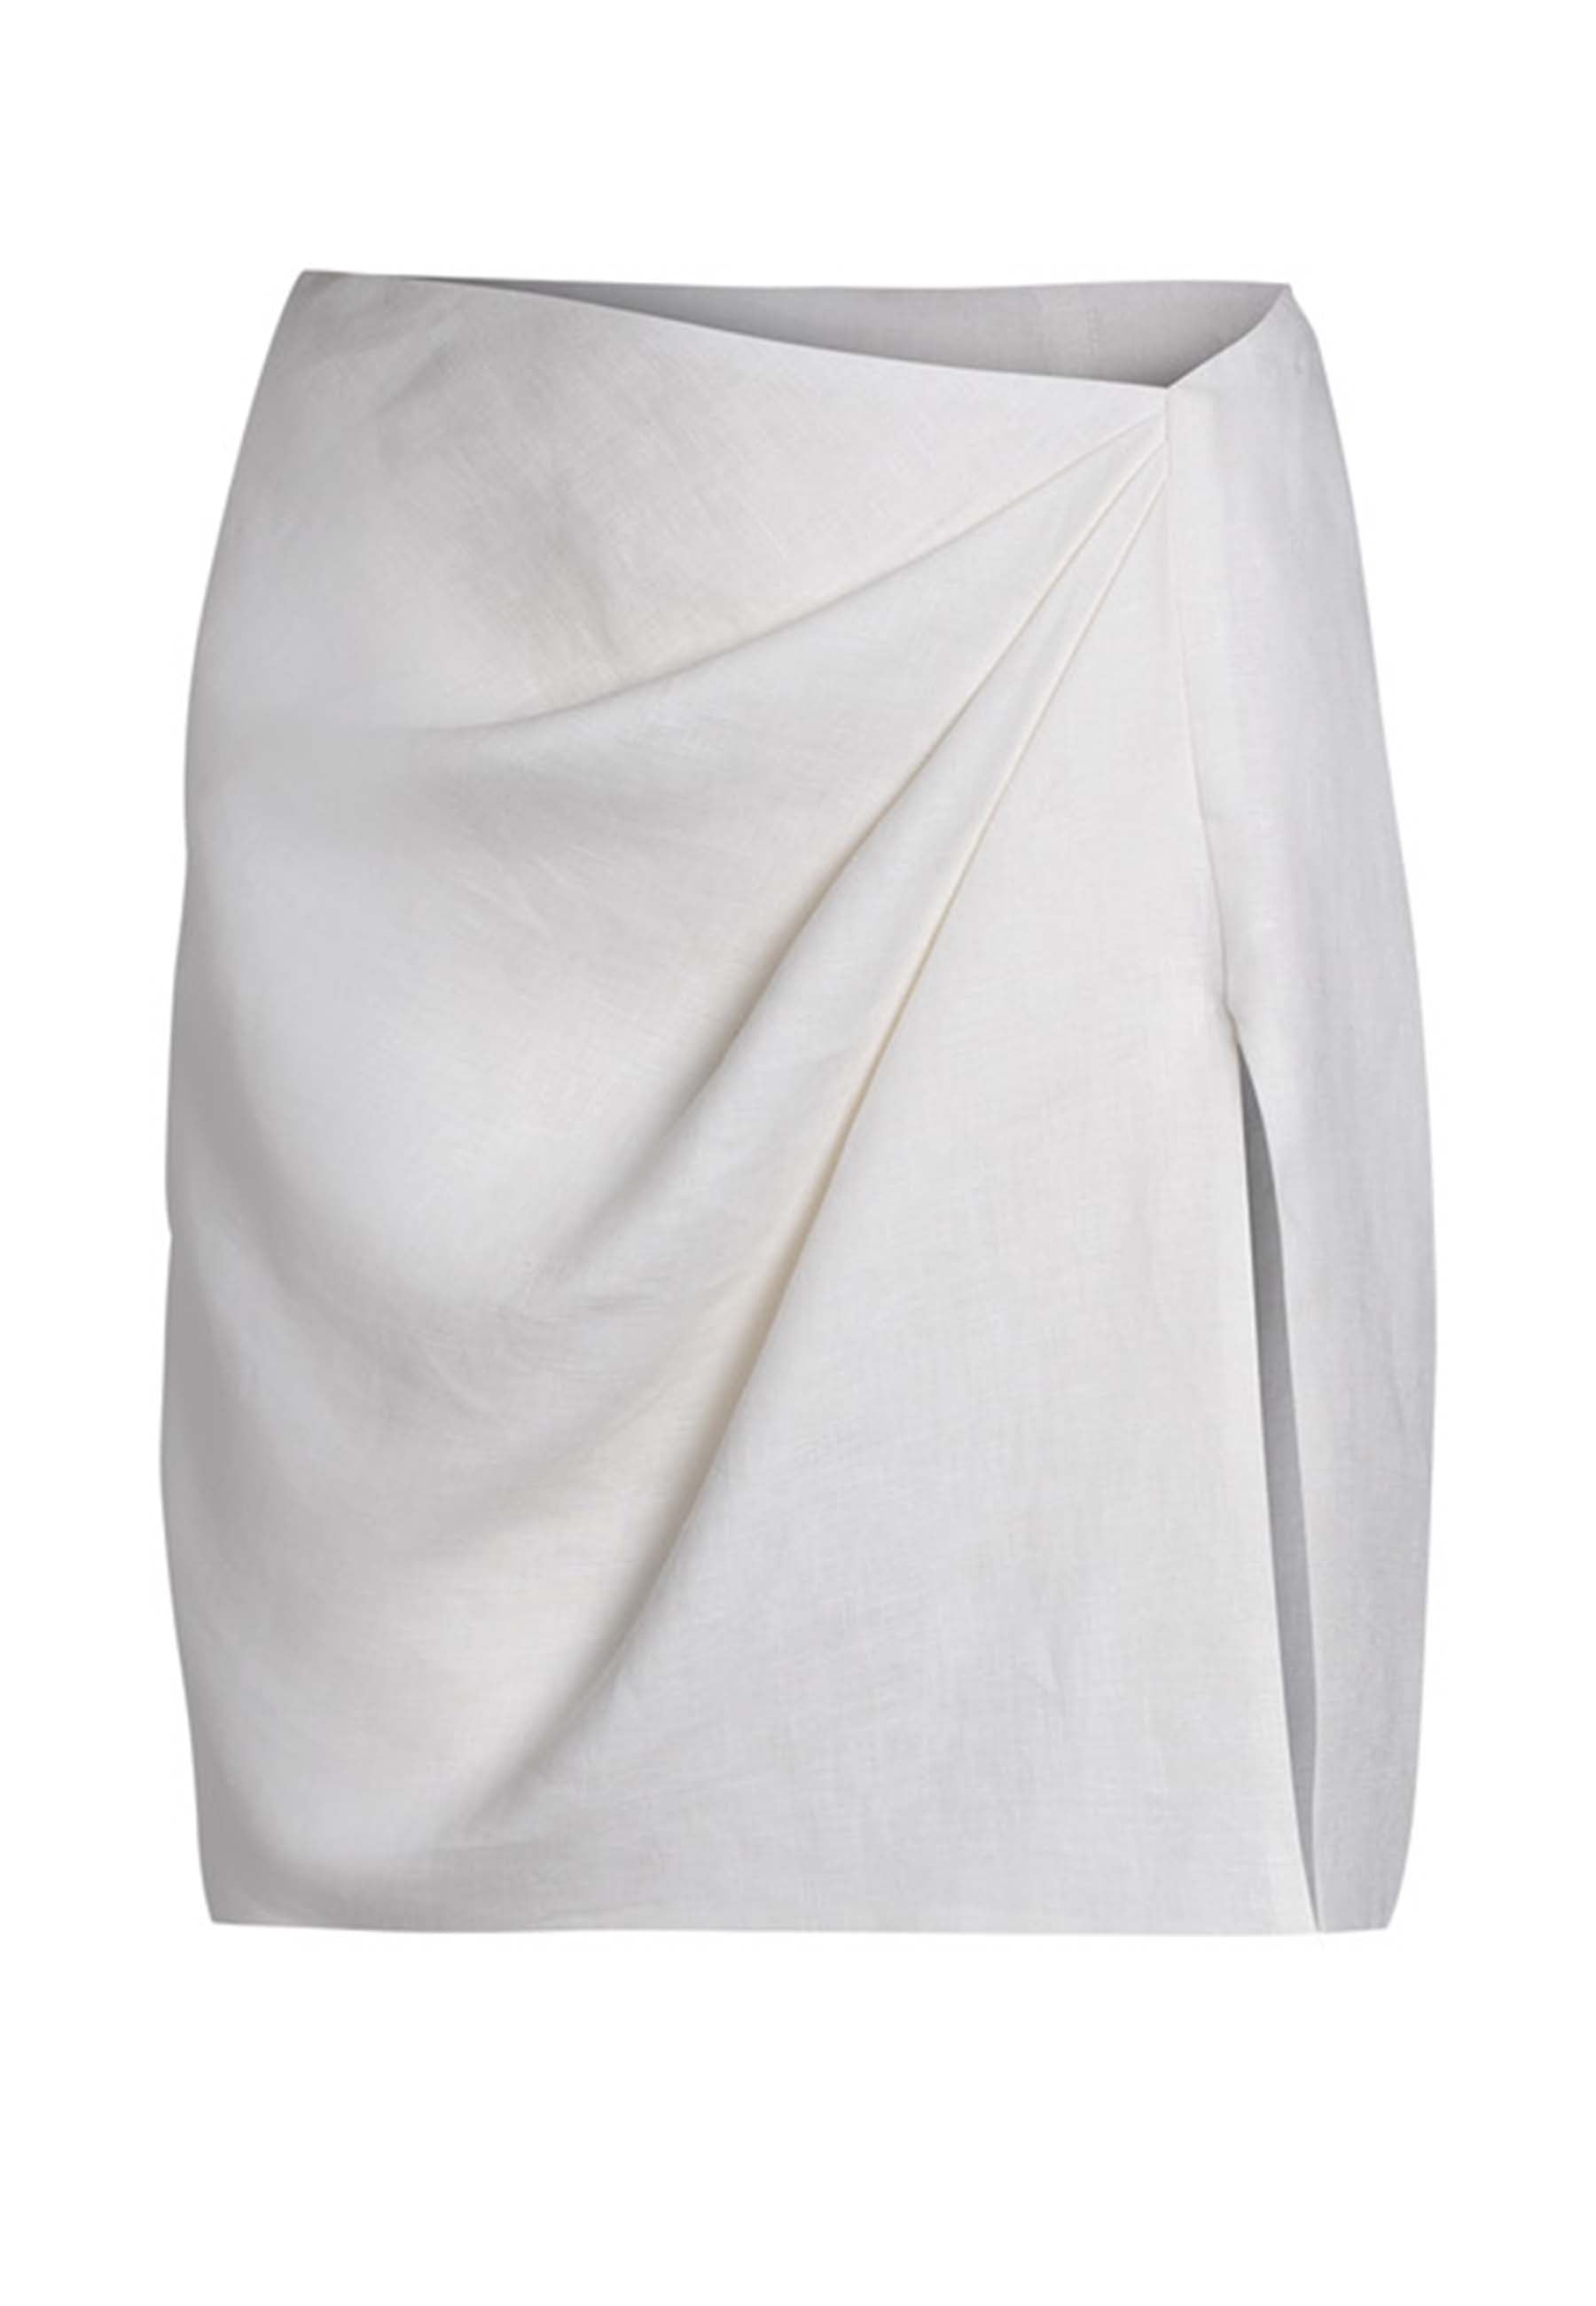 Women's white linen mini skirt with slit